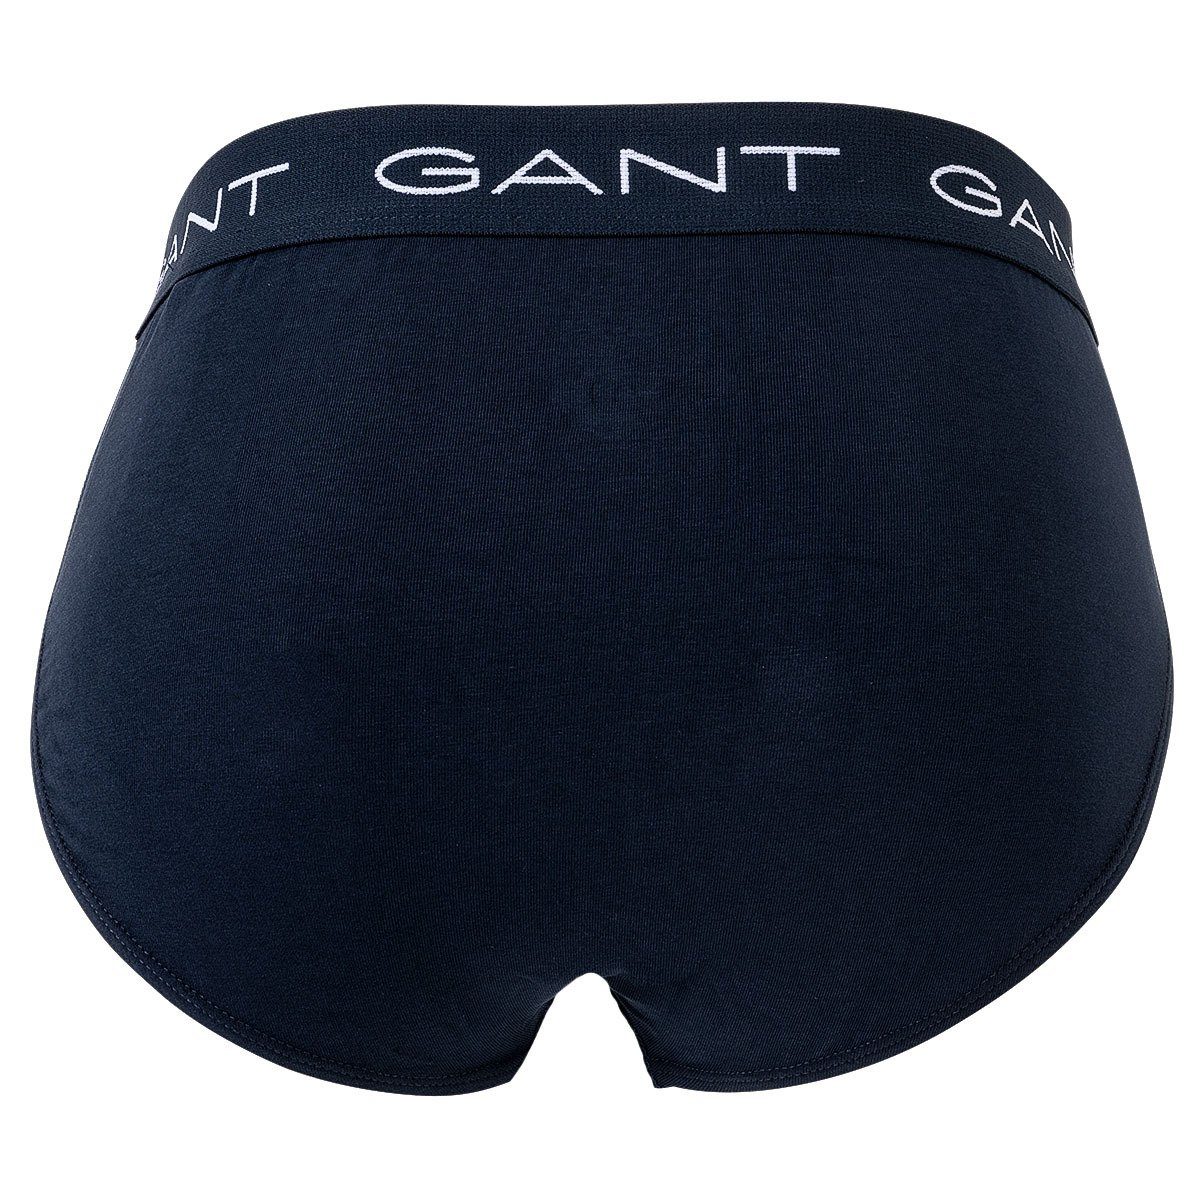 Gant 3er - Slips, Slip Herren Cotton Stretch Briefs, Pack Marine